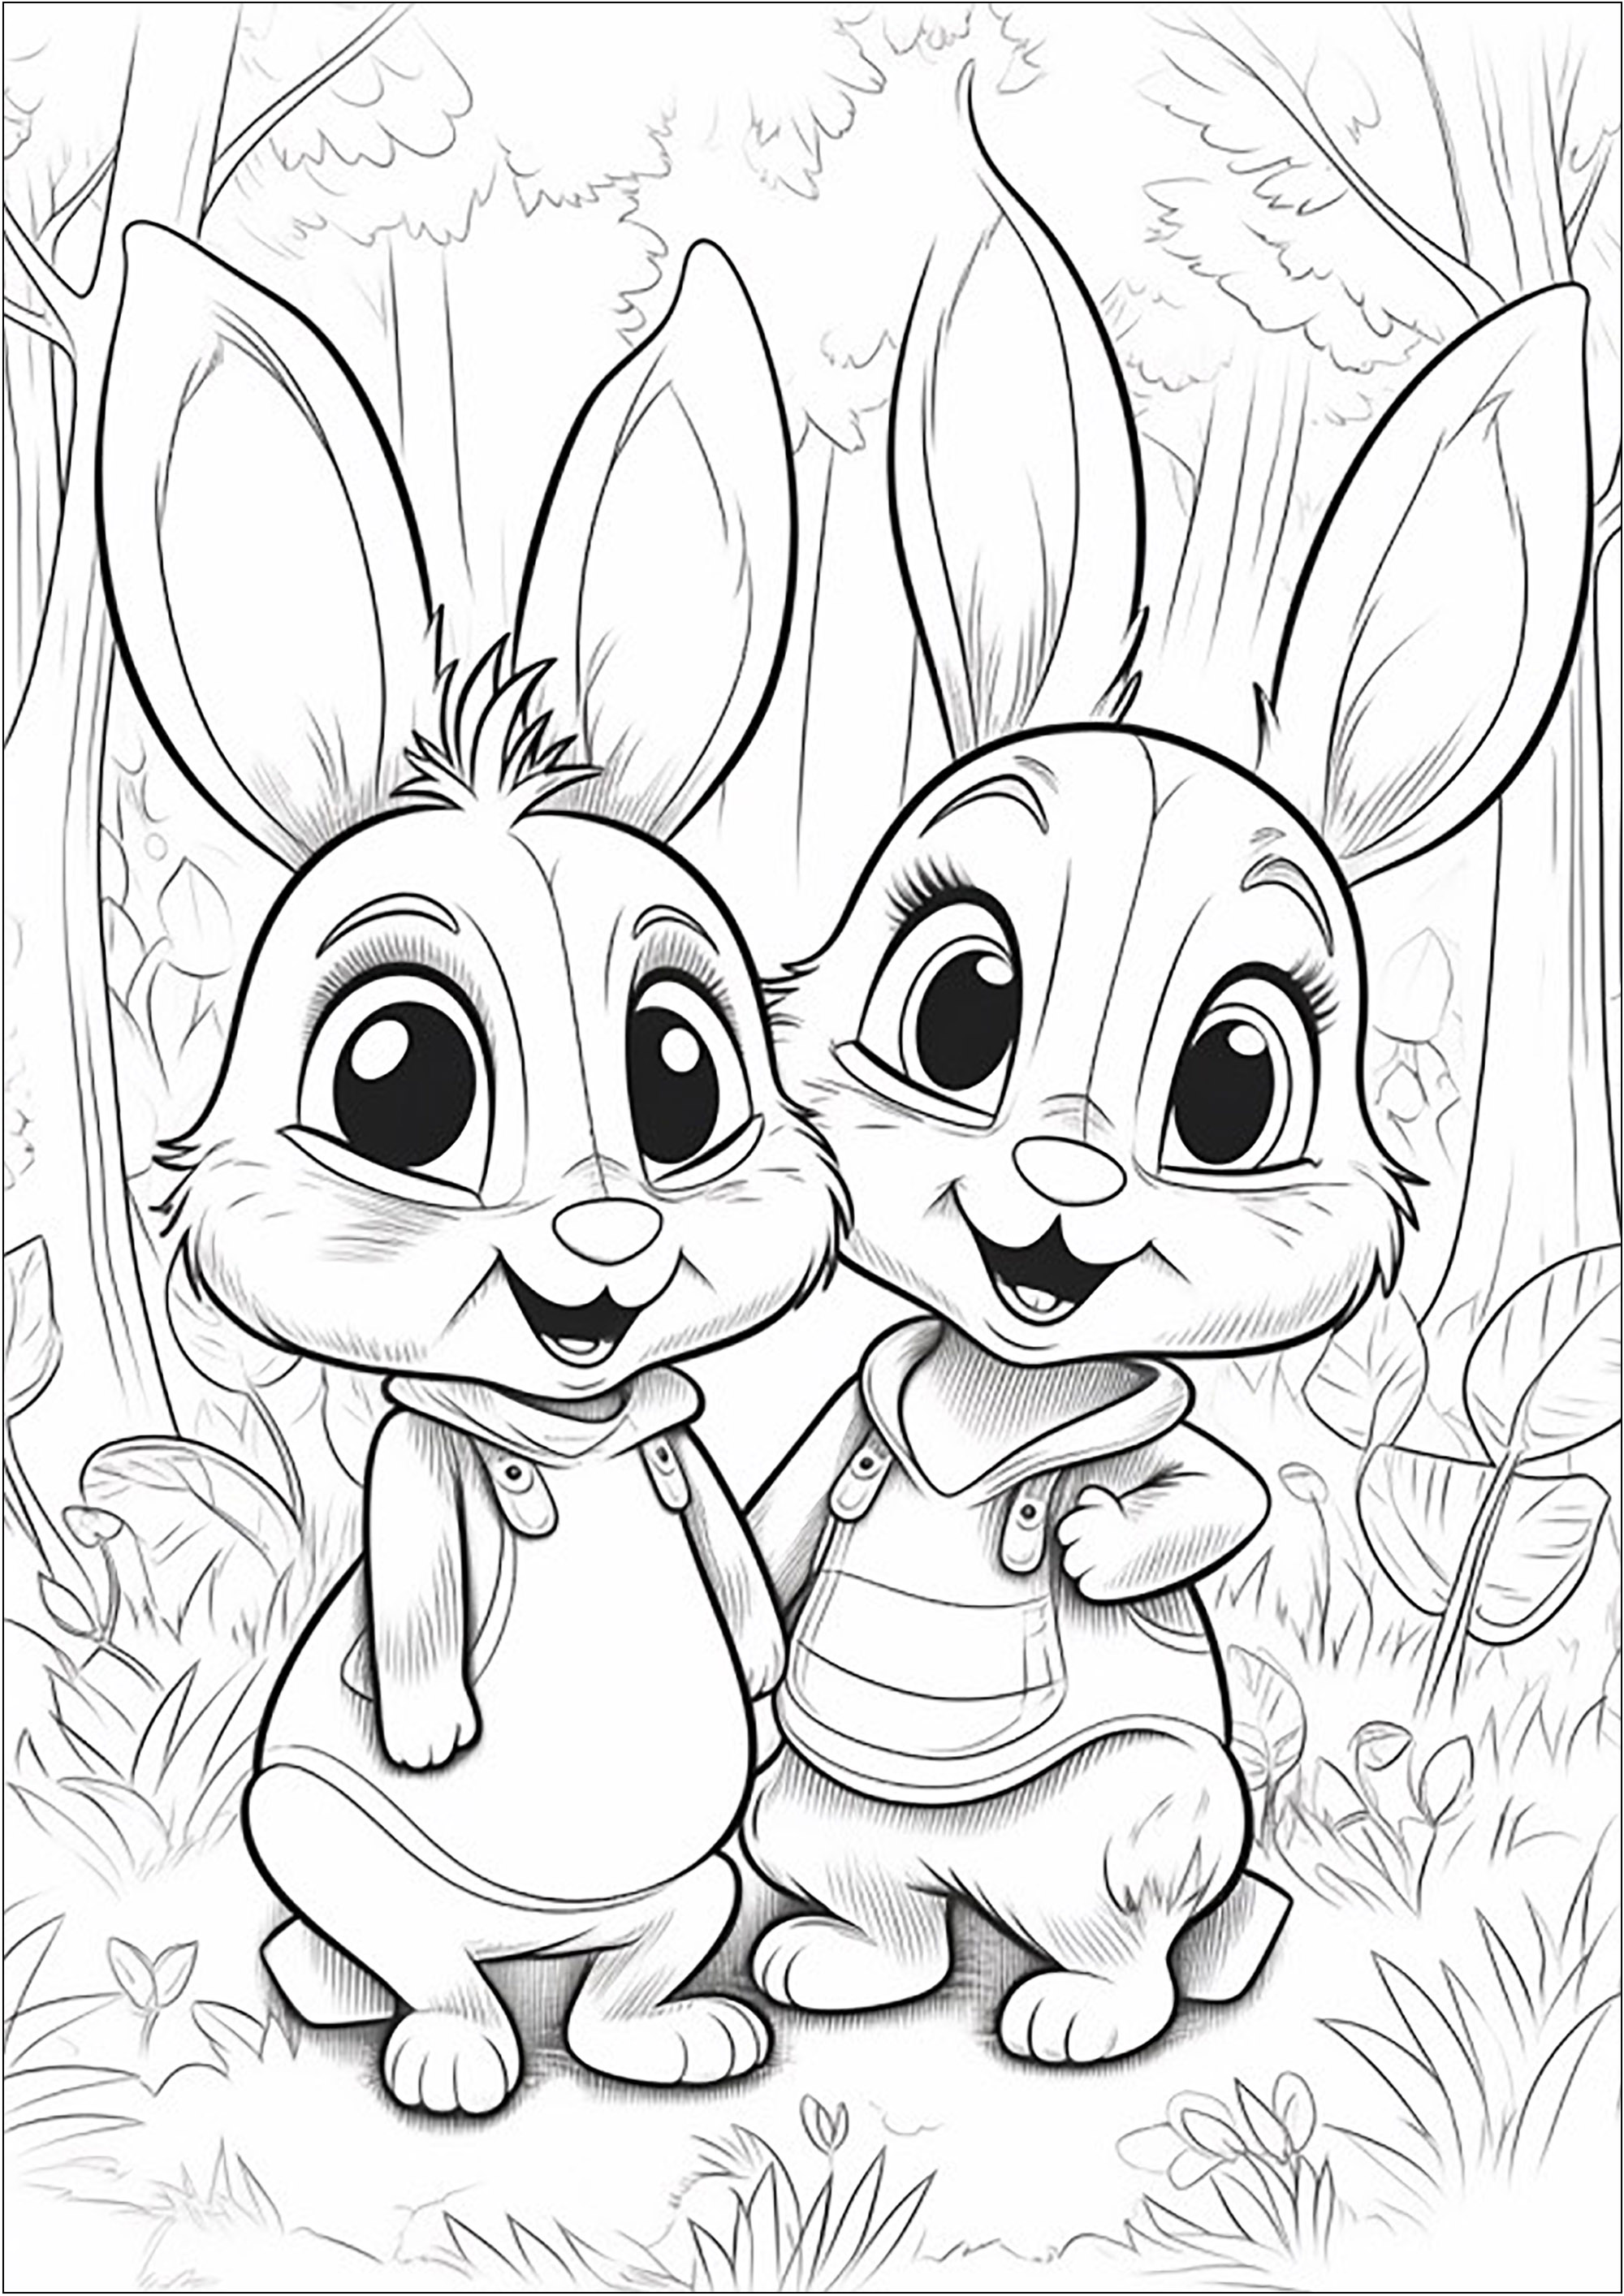 Deux petits lapins dans la forêt - 1. Deux lapins souriants, dans une jolie forêt